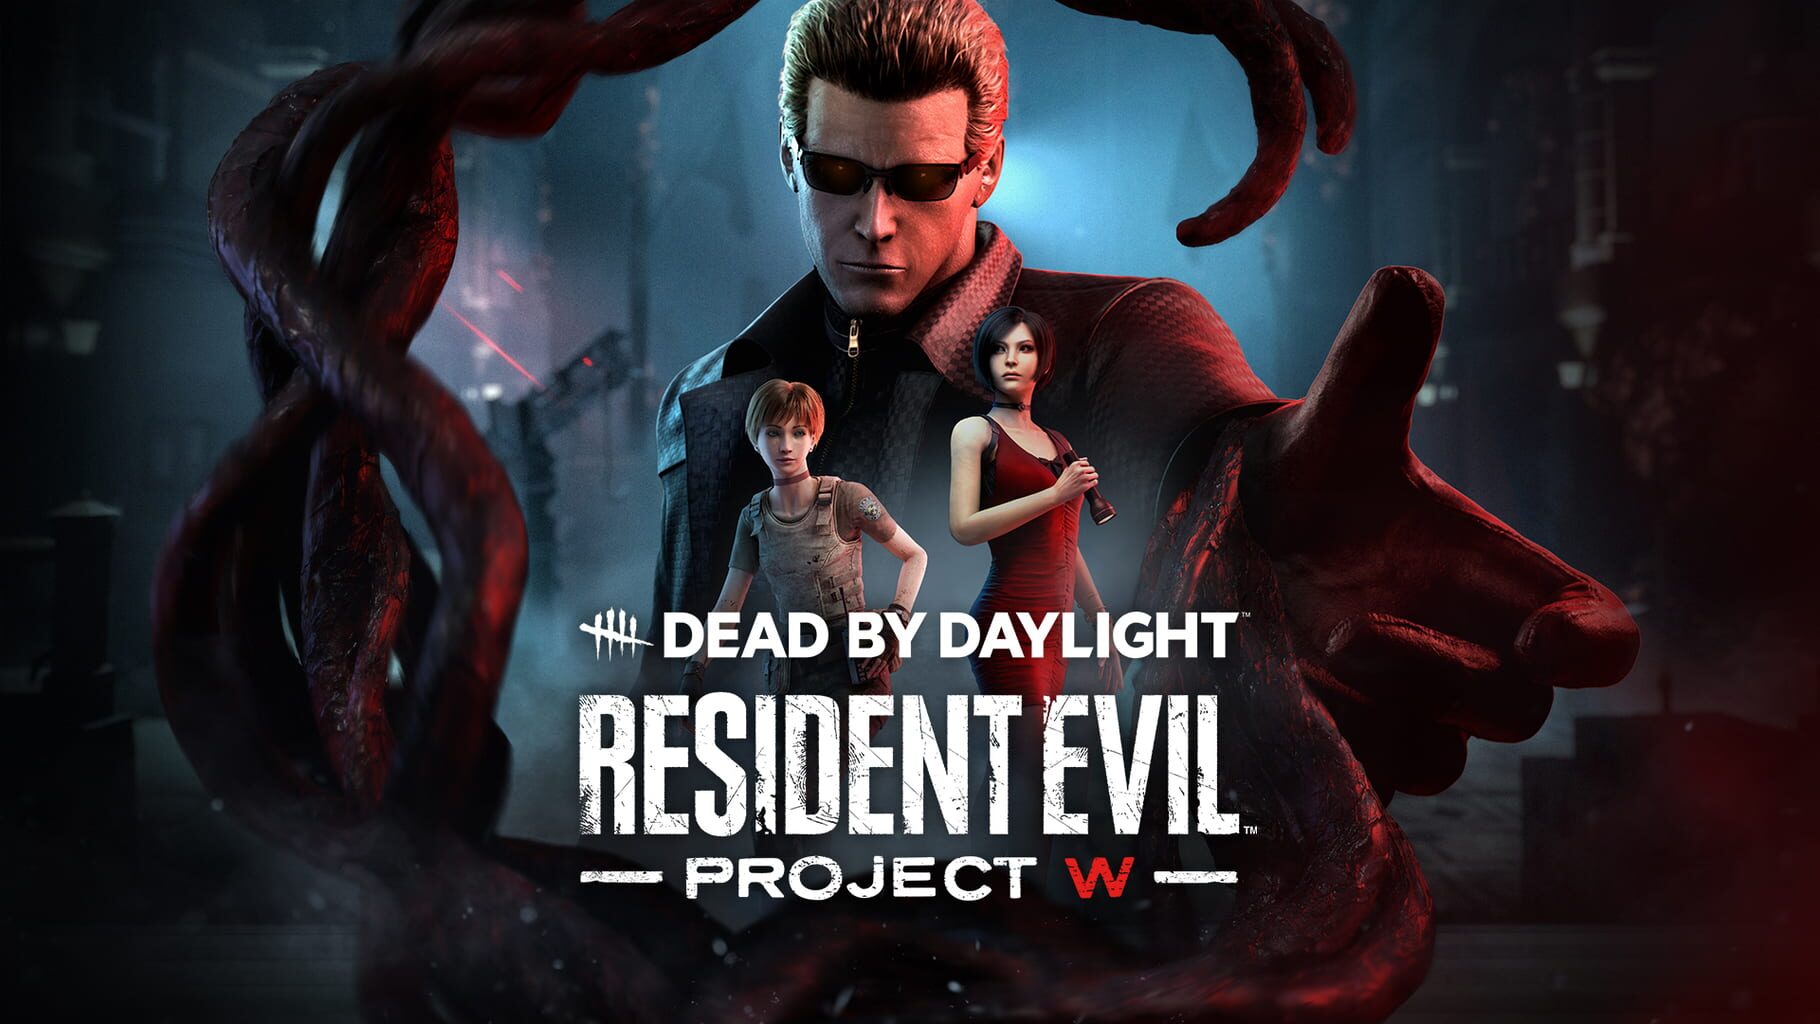 Arte - Dead by Daylight: Resident Evil - Project W